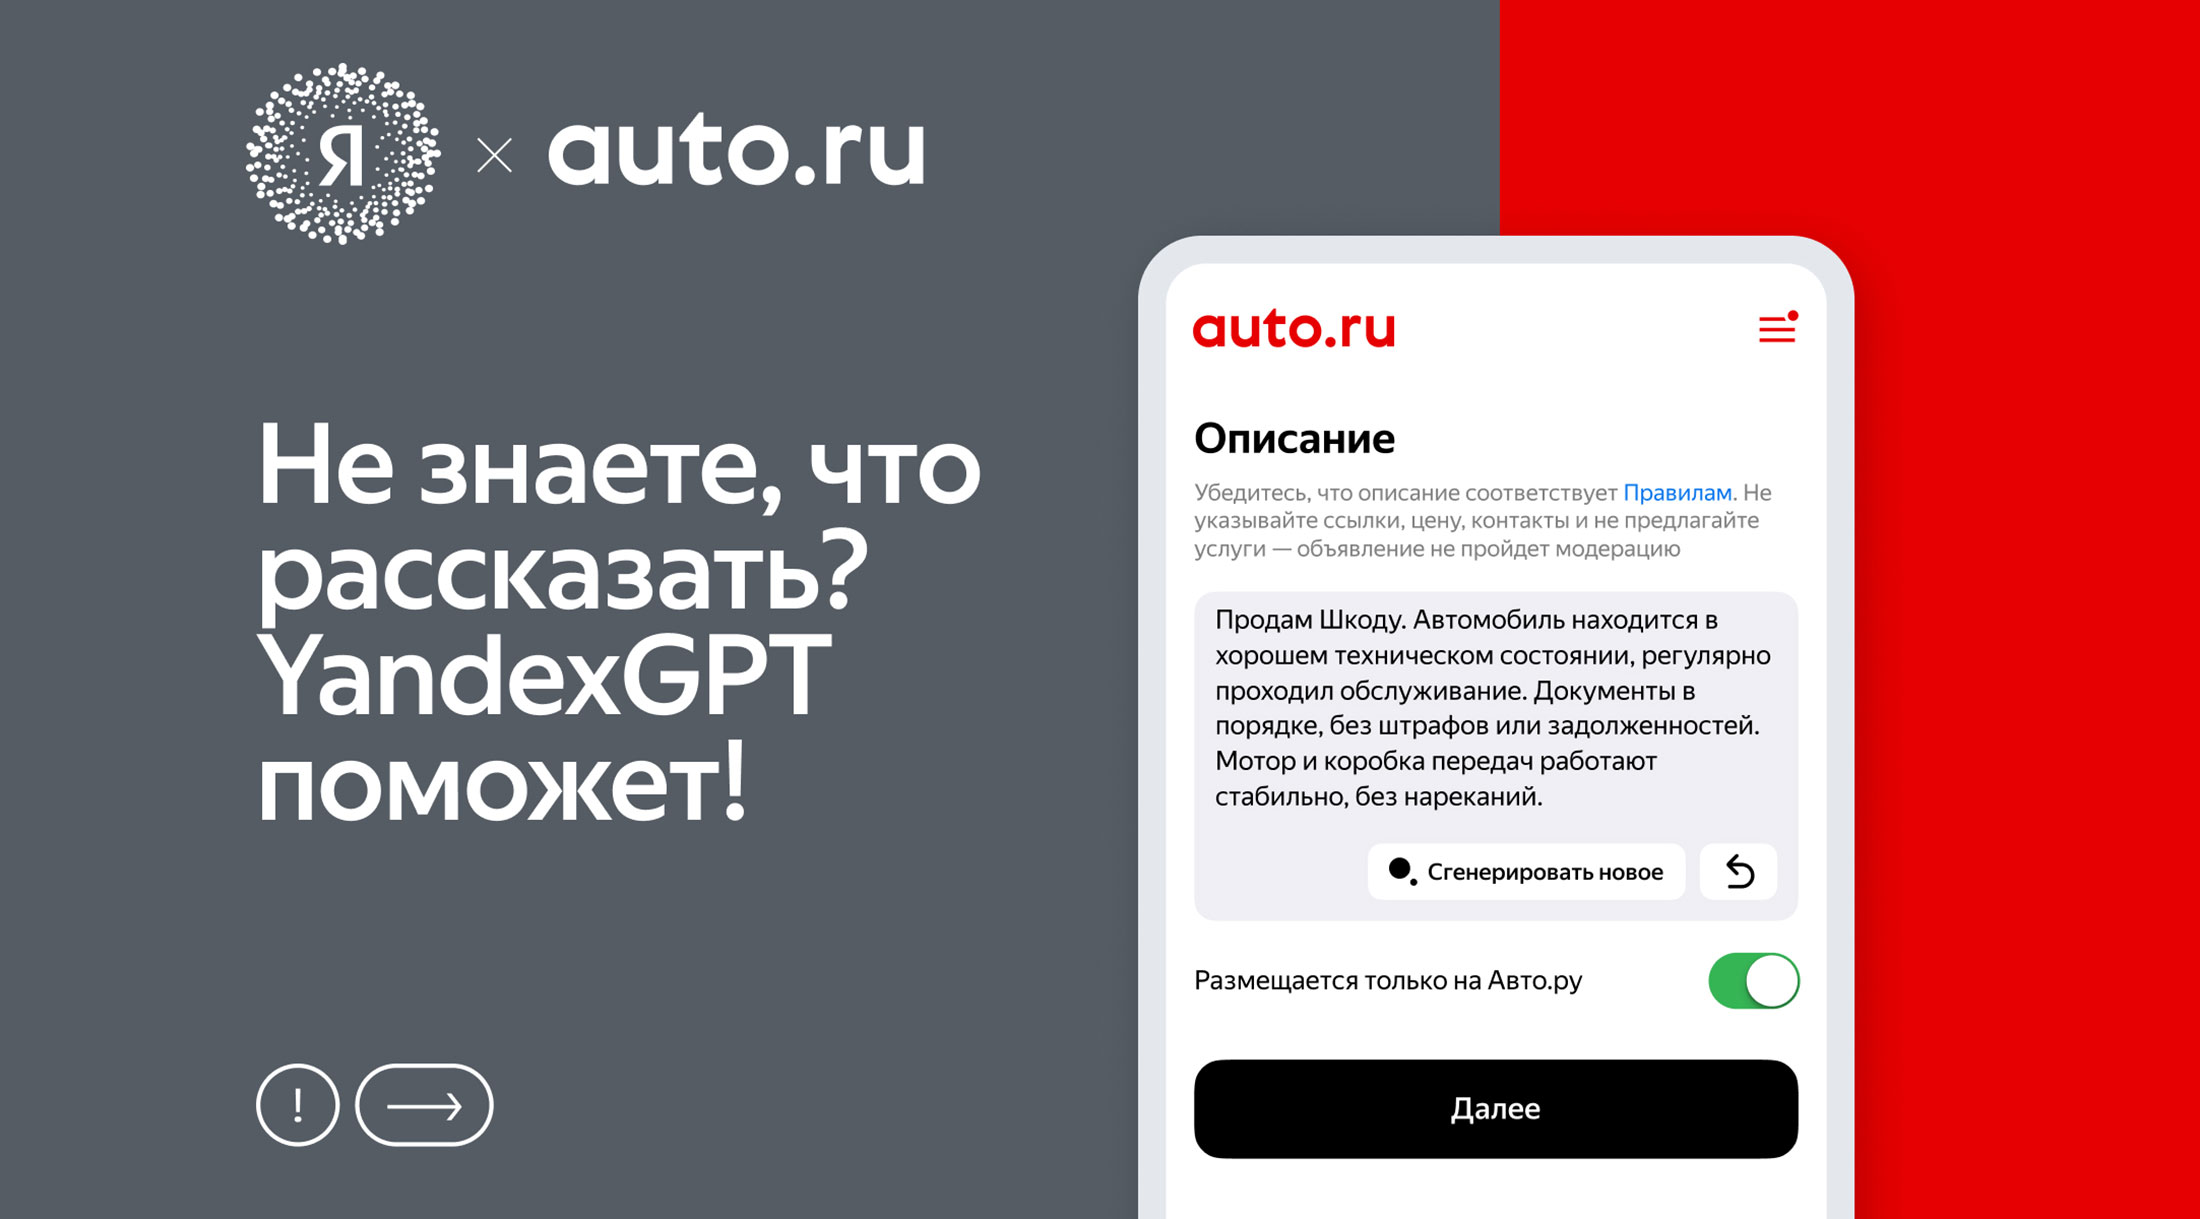 Авто.ру запустил возможность создания объявлений о продаже автомобилей с помощью YandexGPT